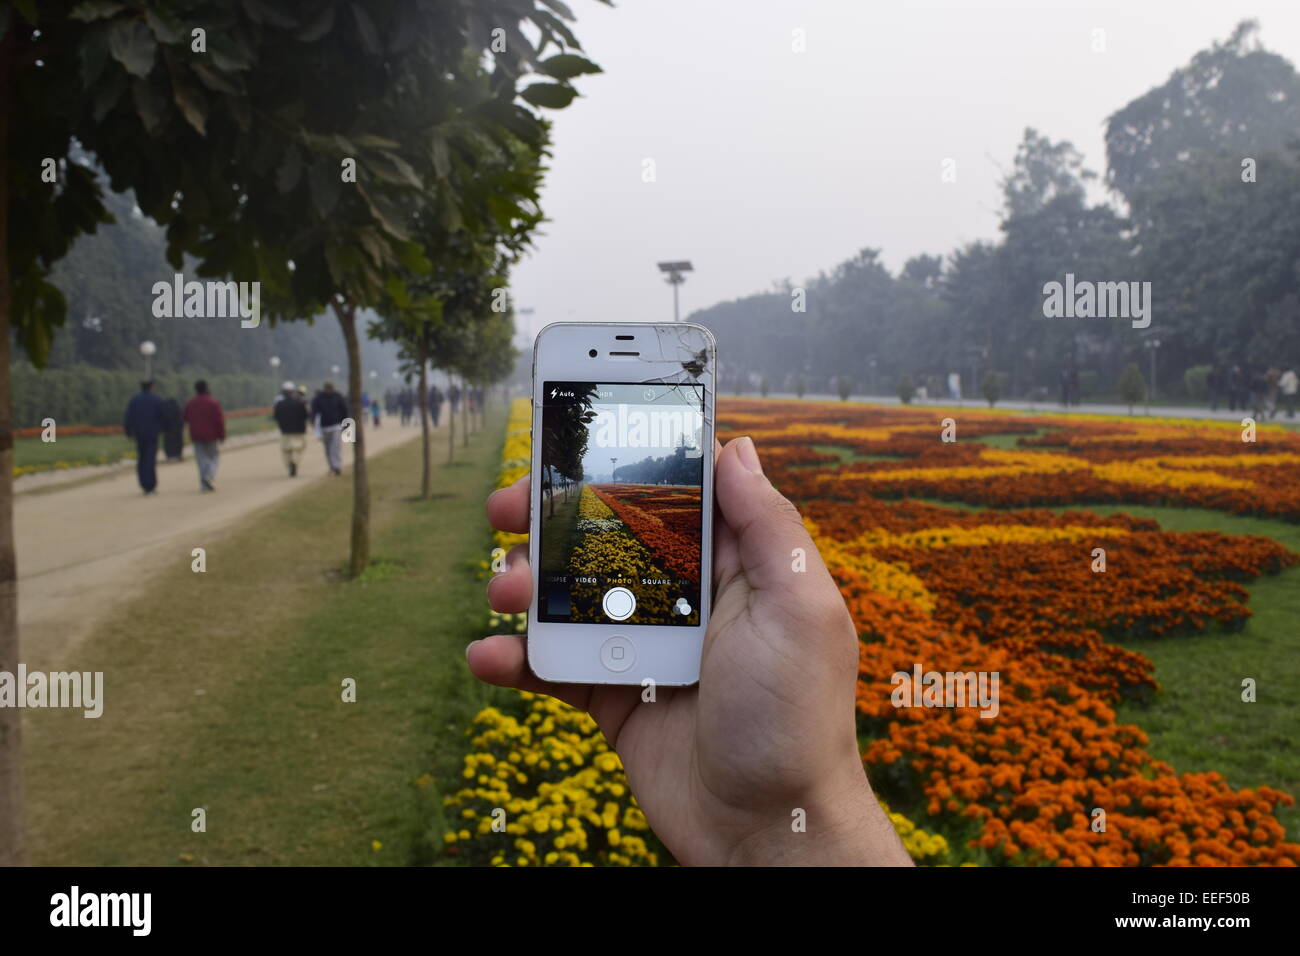 Parque público: foto-en-fotografía con un iphone roto en un parque público Foto de stock